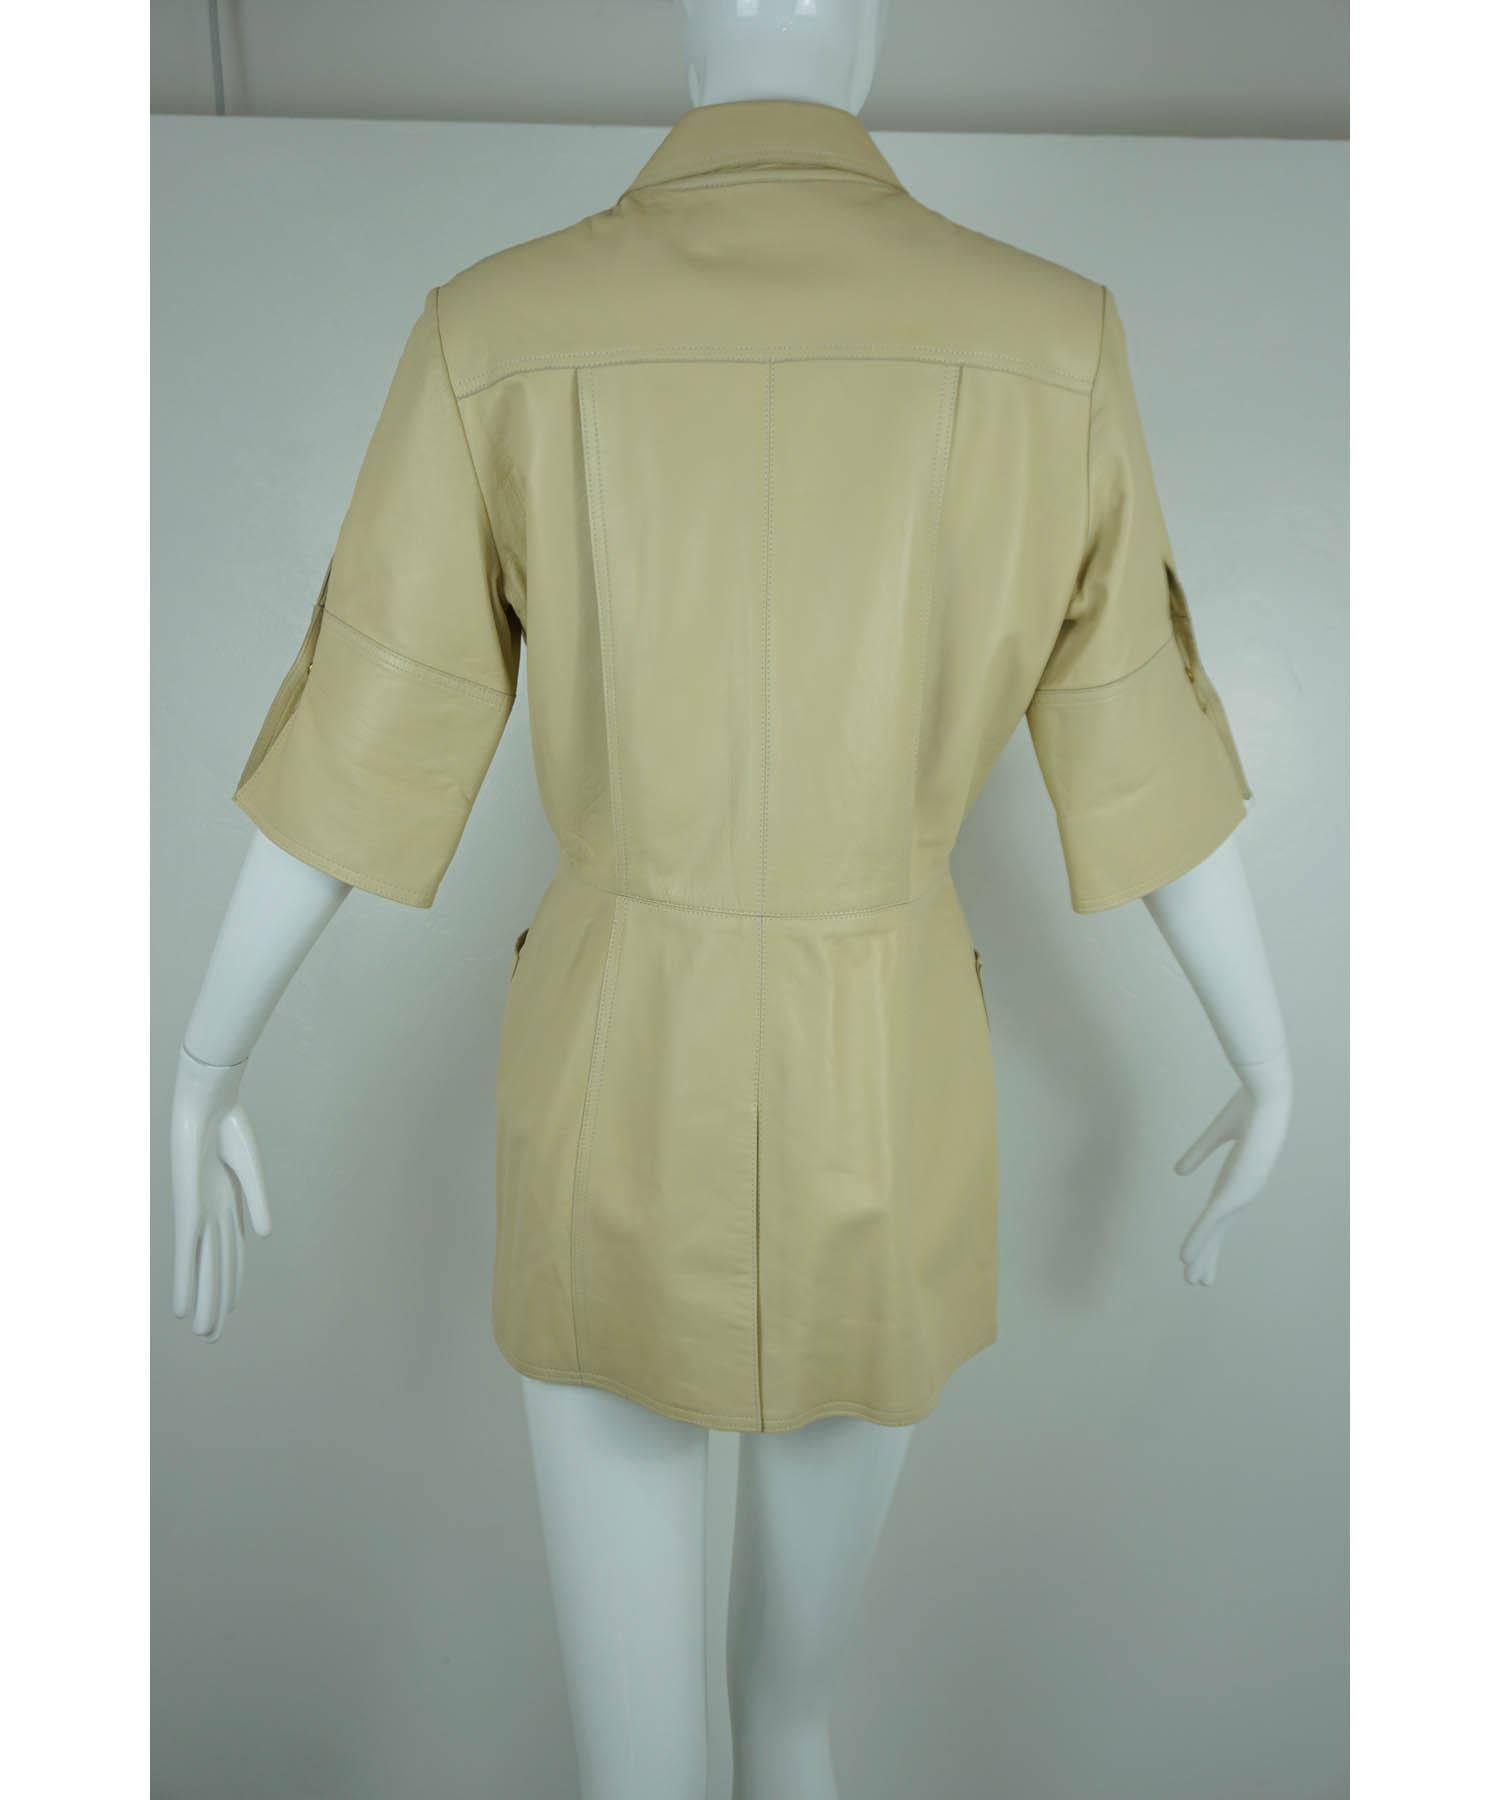 Women's or Men's Oscar de la Renta 3/4 Sleeve Size 4 Tan Leather Jacket  For Sale